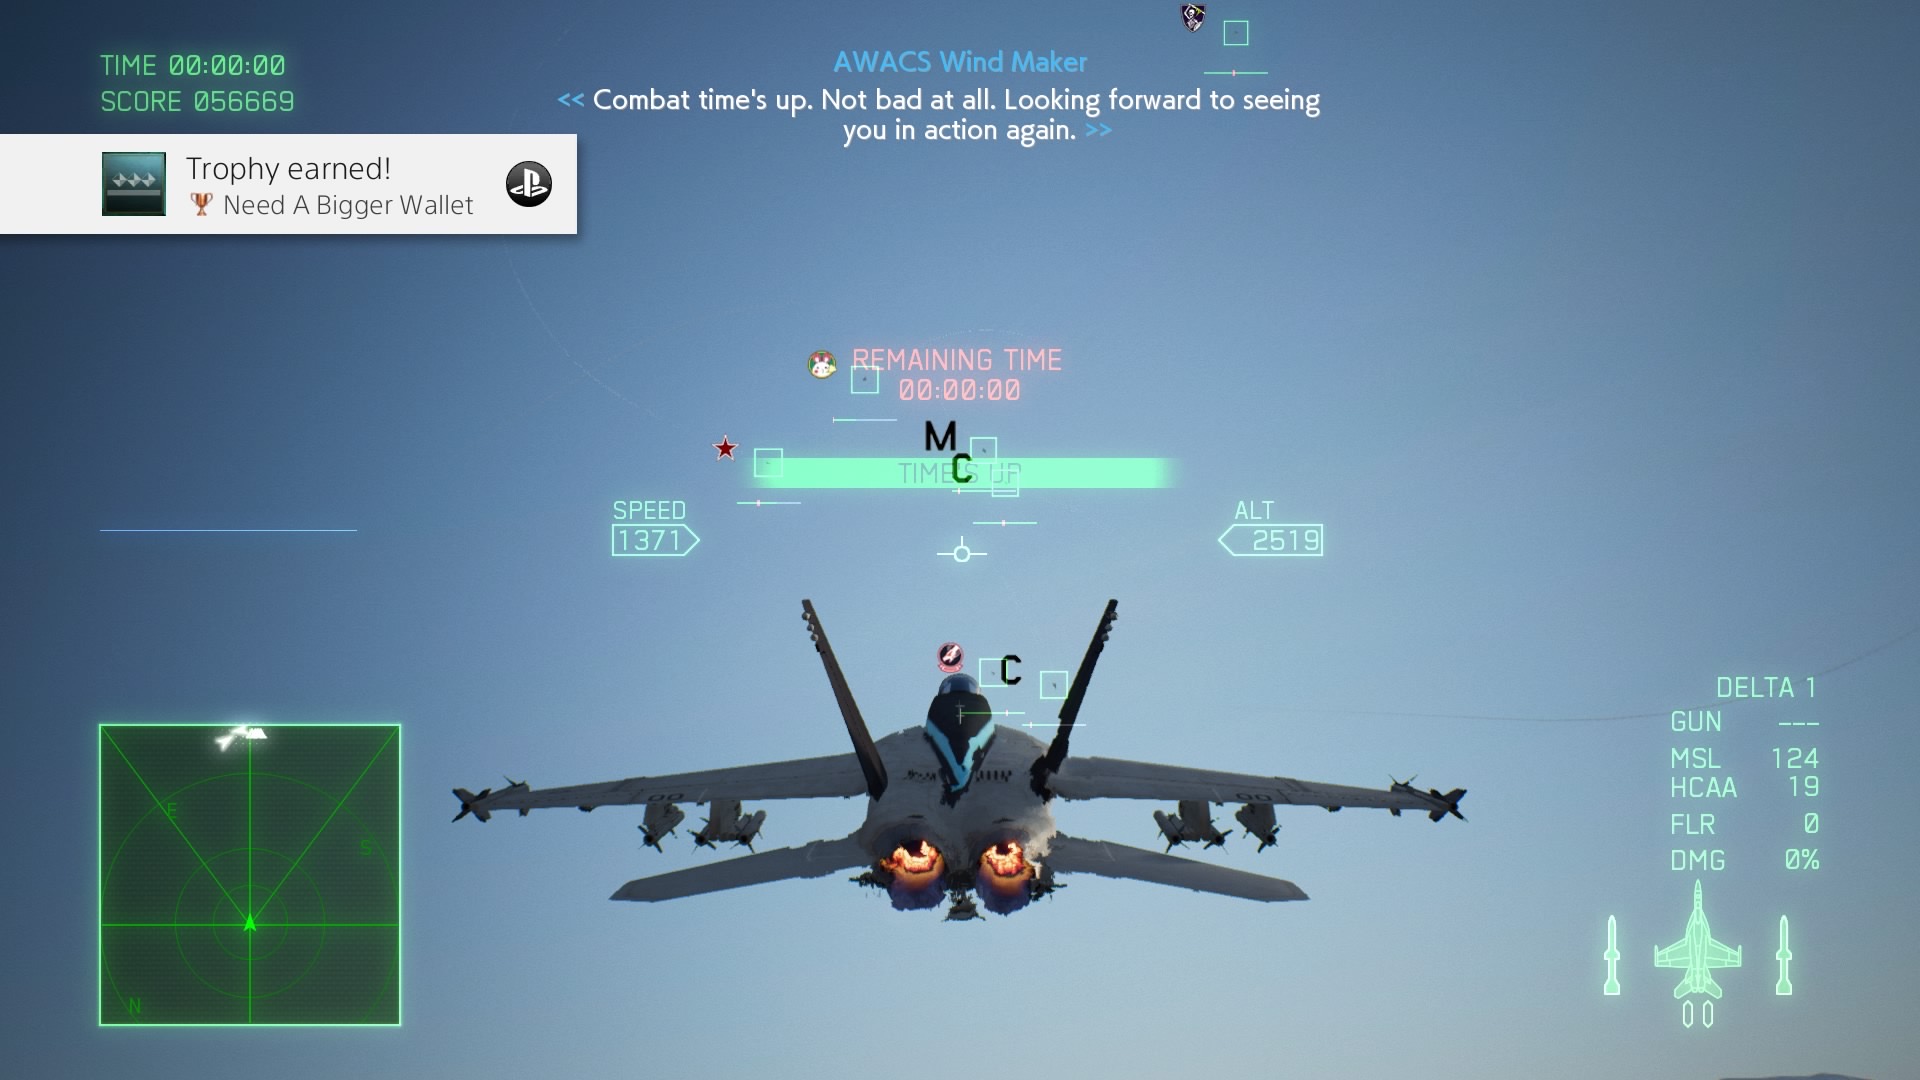 Top Gun: Maverick DLC Flies Into Ace Combat 7